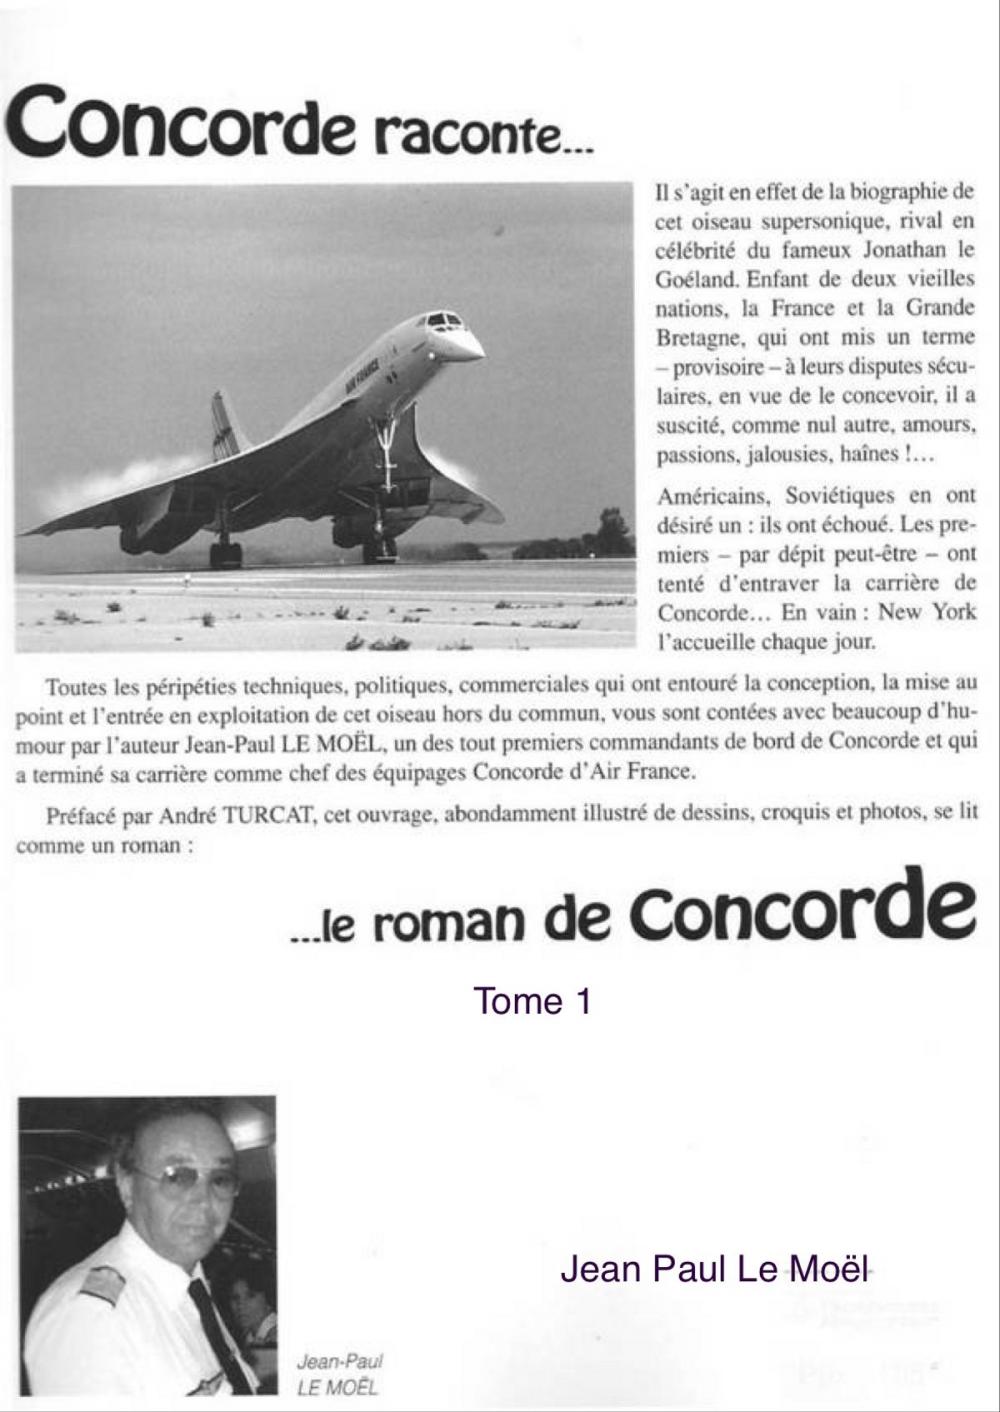 Big bigCover of Concorde raconte